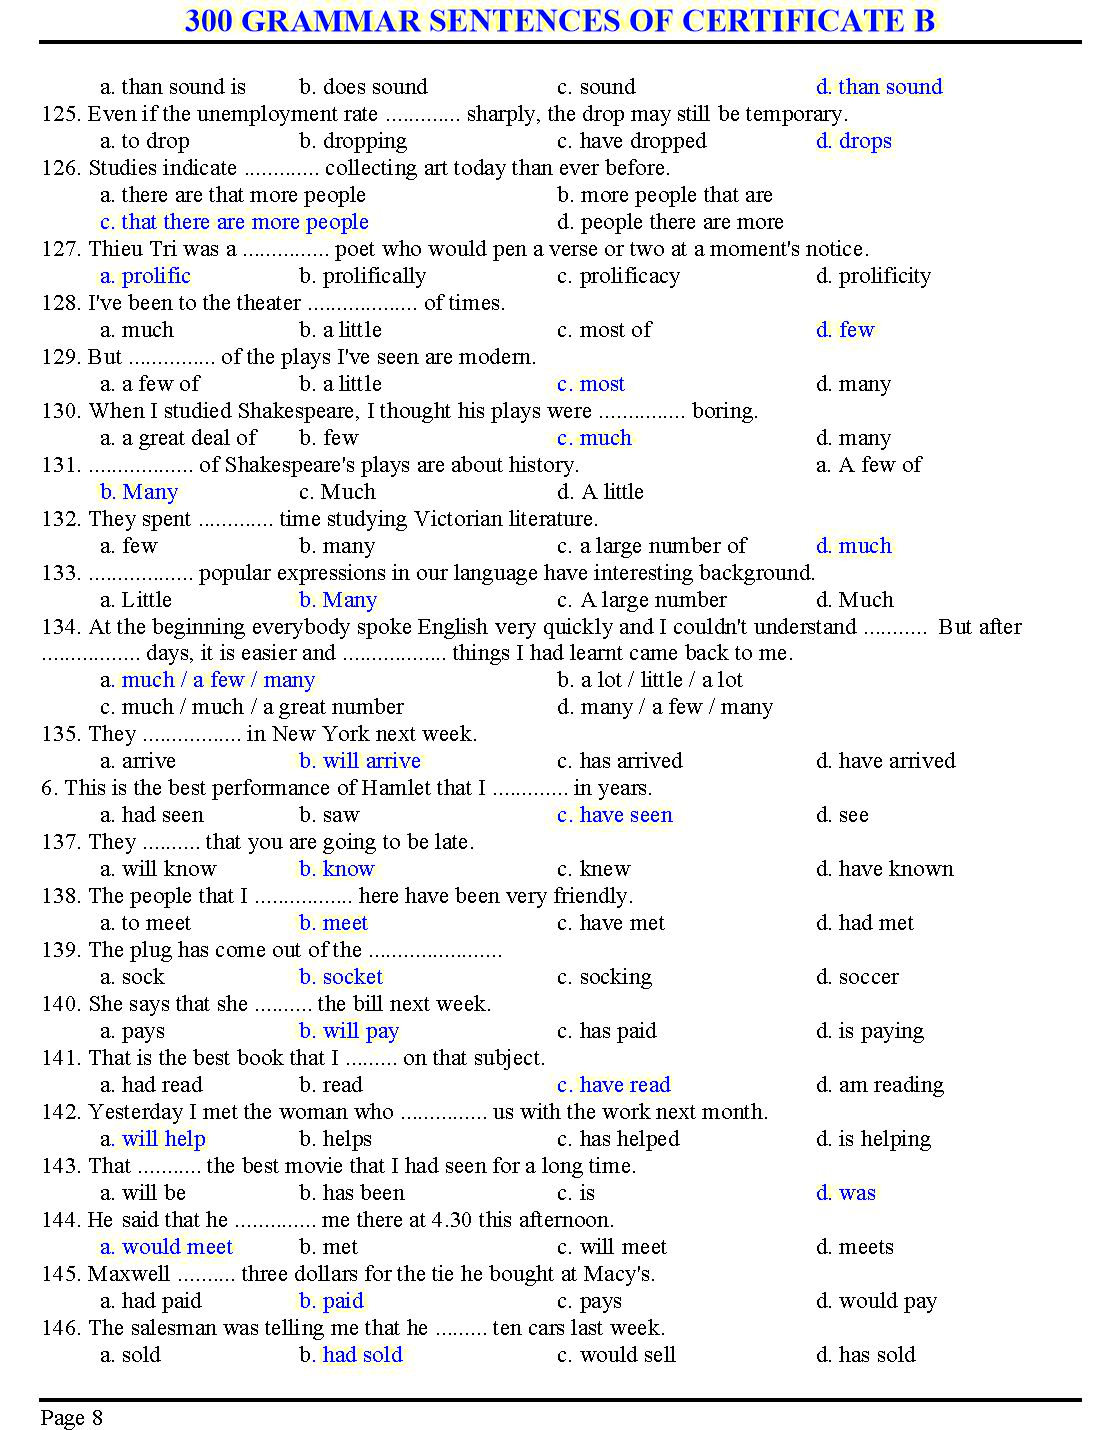 300 grammar sentences of certificate B trang 8